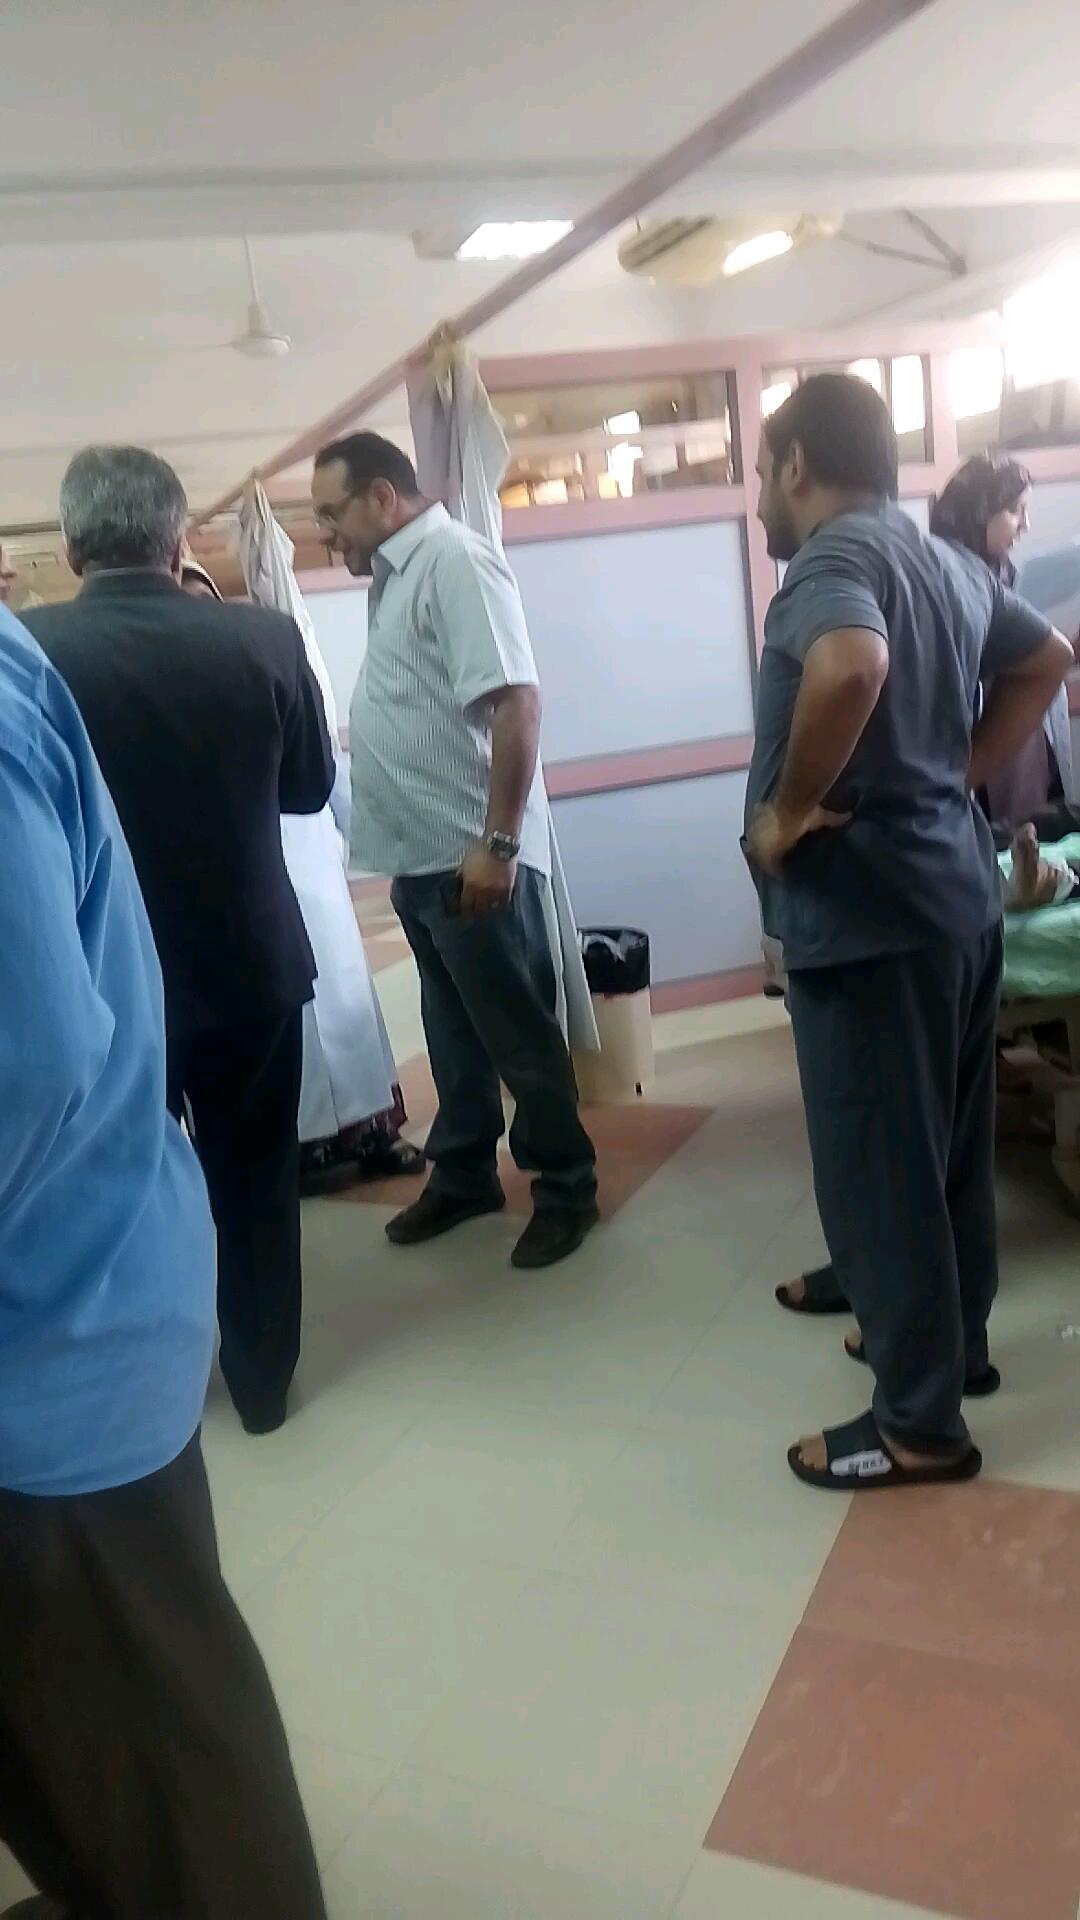 وصول 6 من ضحايا الغسيل الكلوي بمستشفي ديرب نجم لعناية مستشفى جامعة الزقازيق (3)